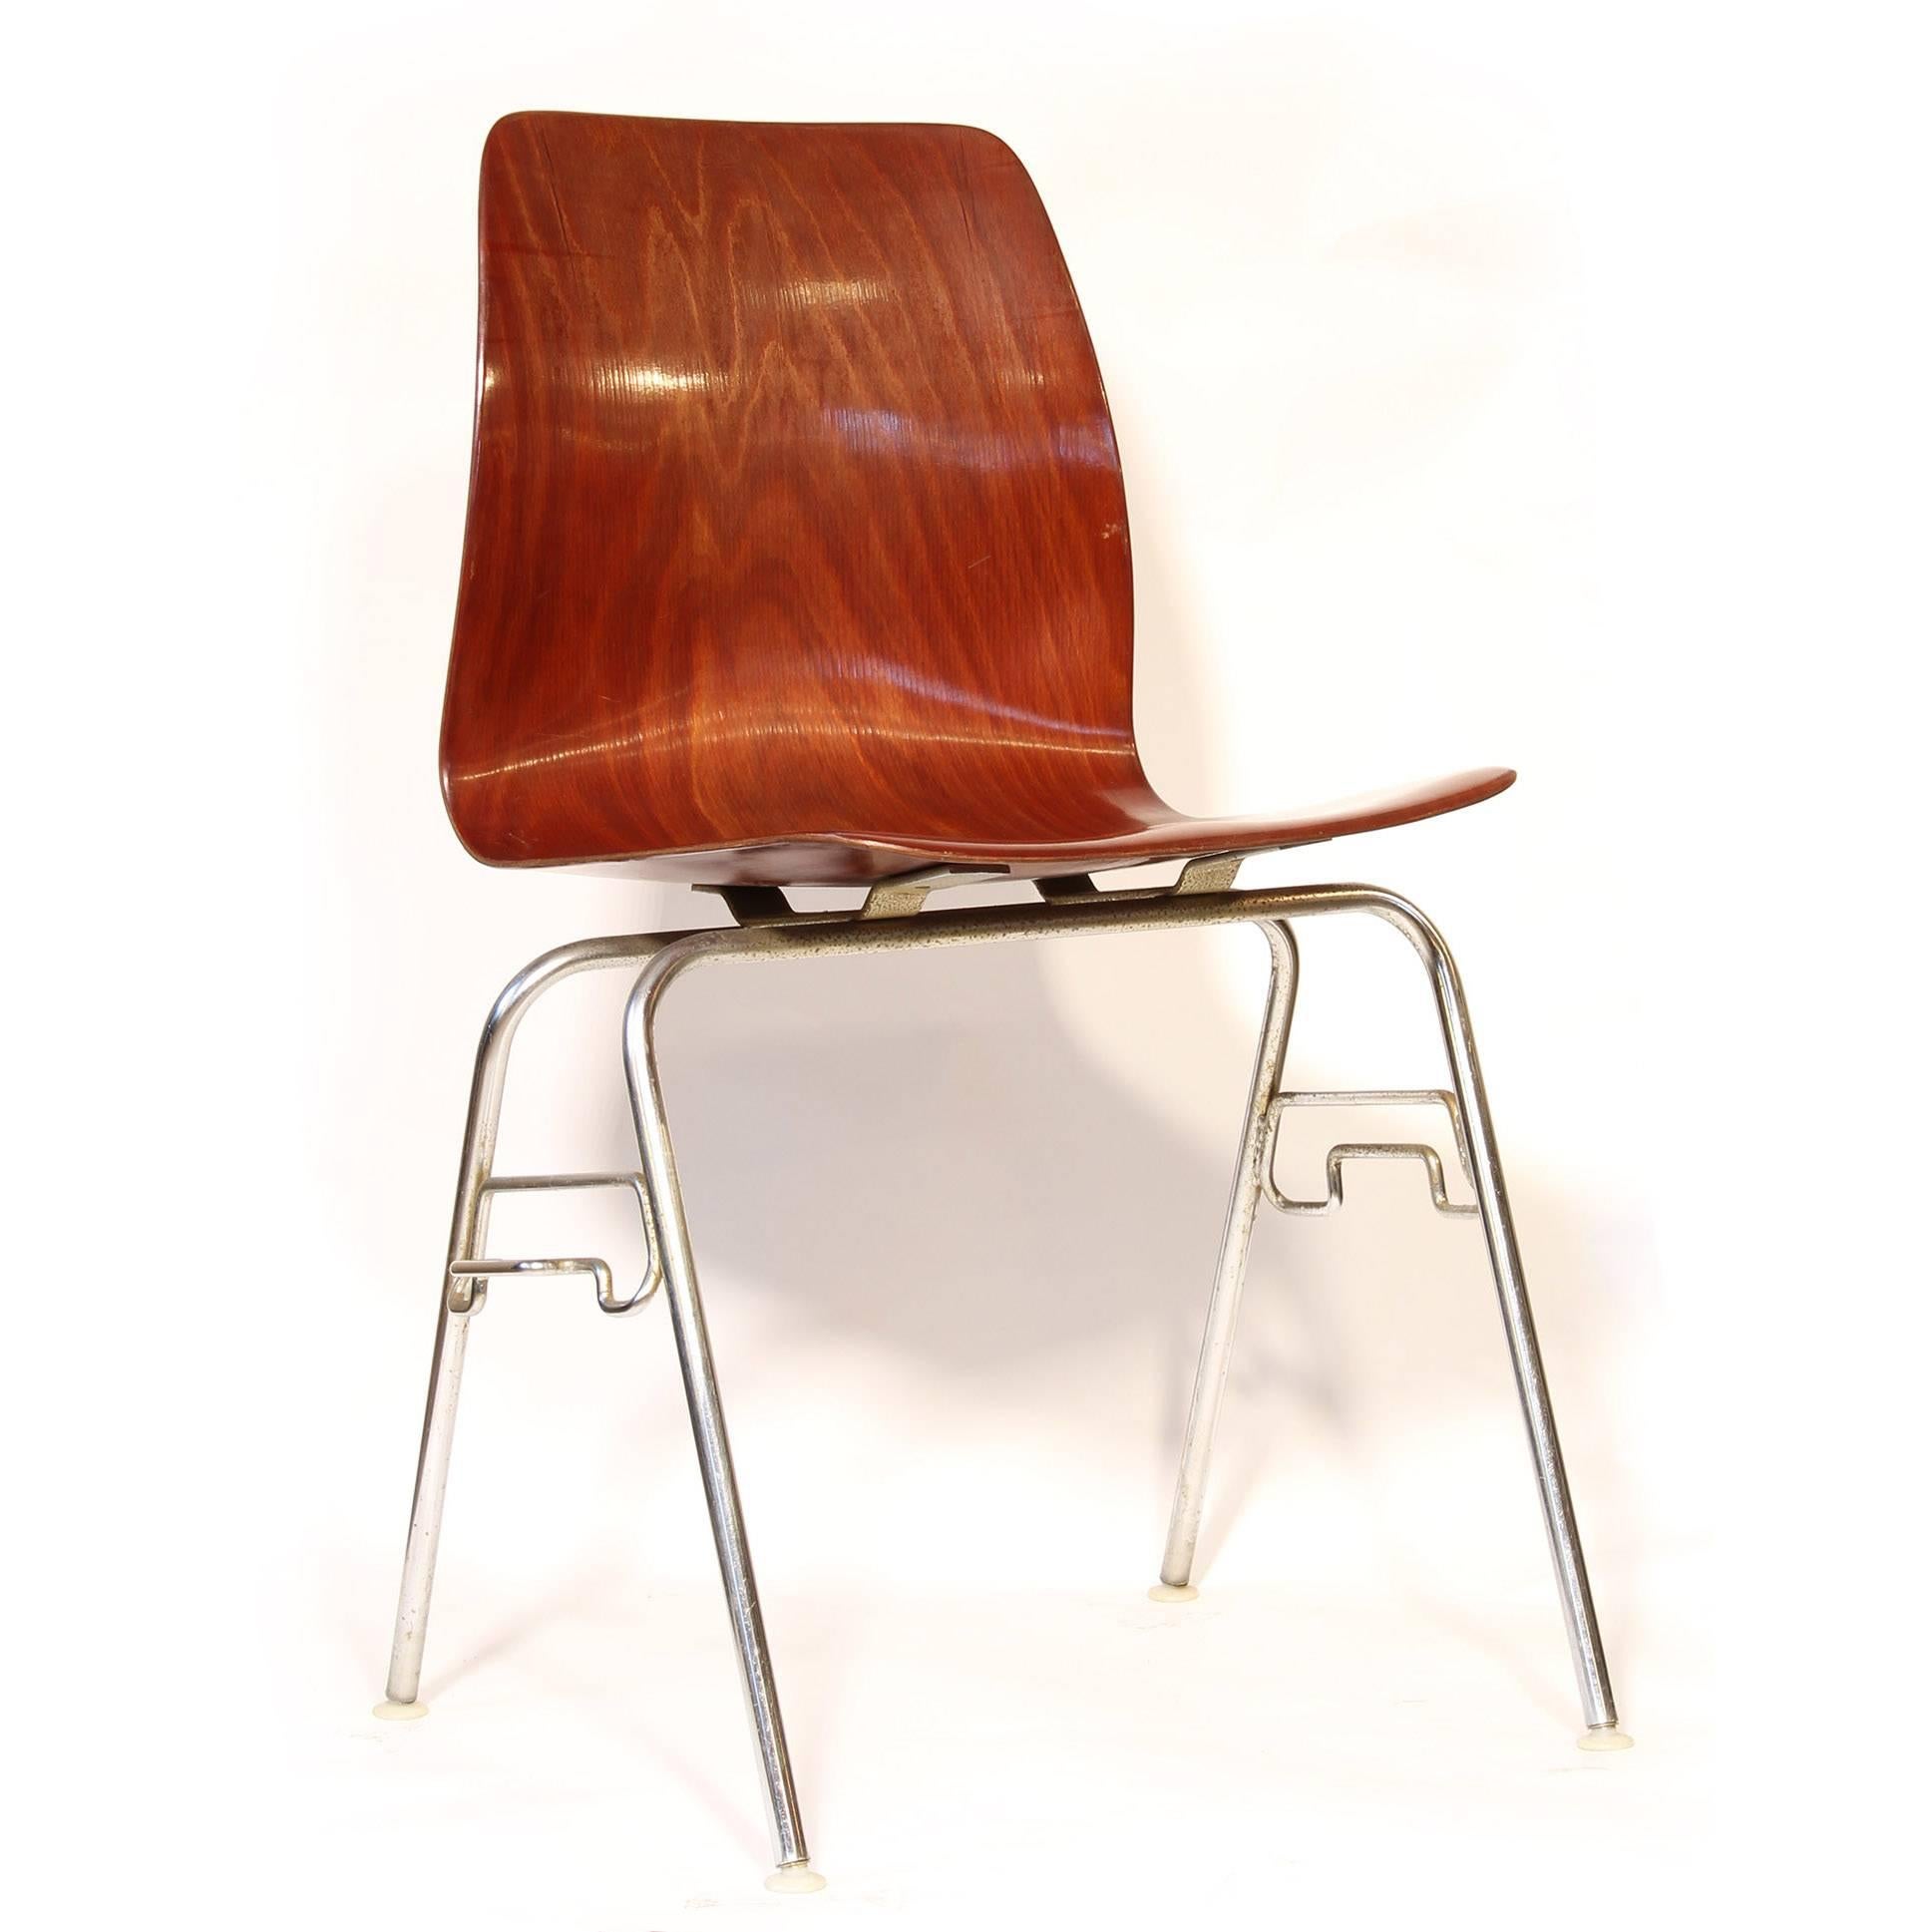 Chaise empilable vintage en bois de rose

Dimensions totales : 18 1/2